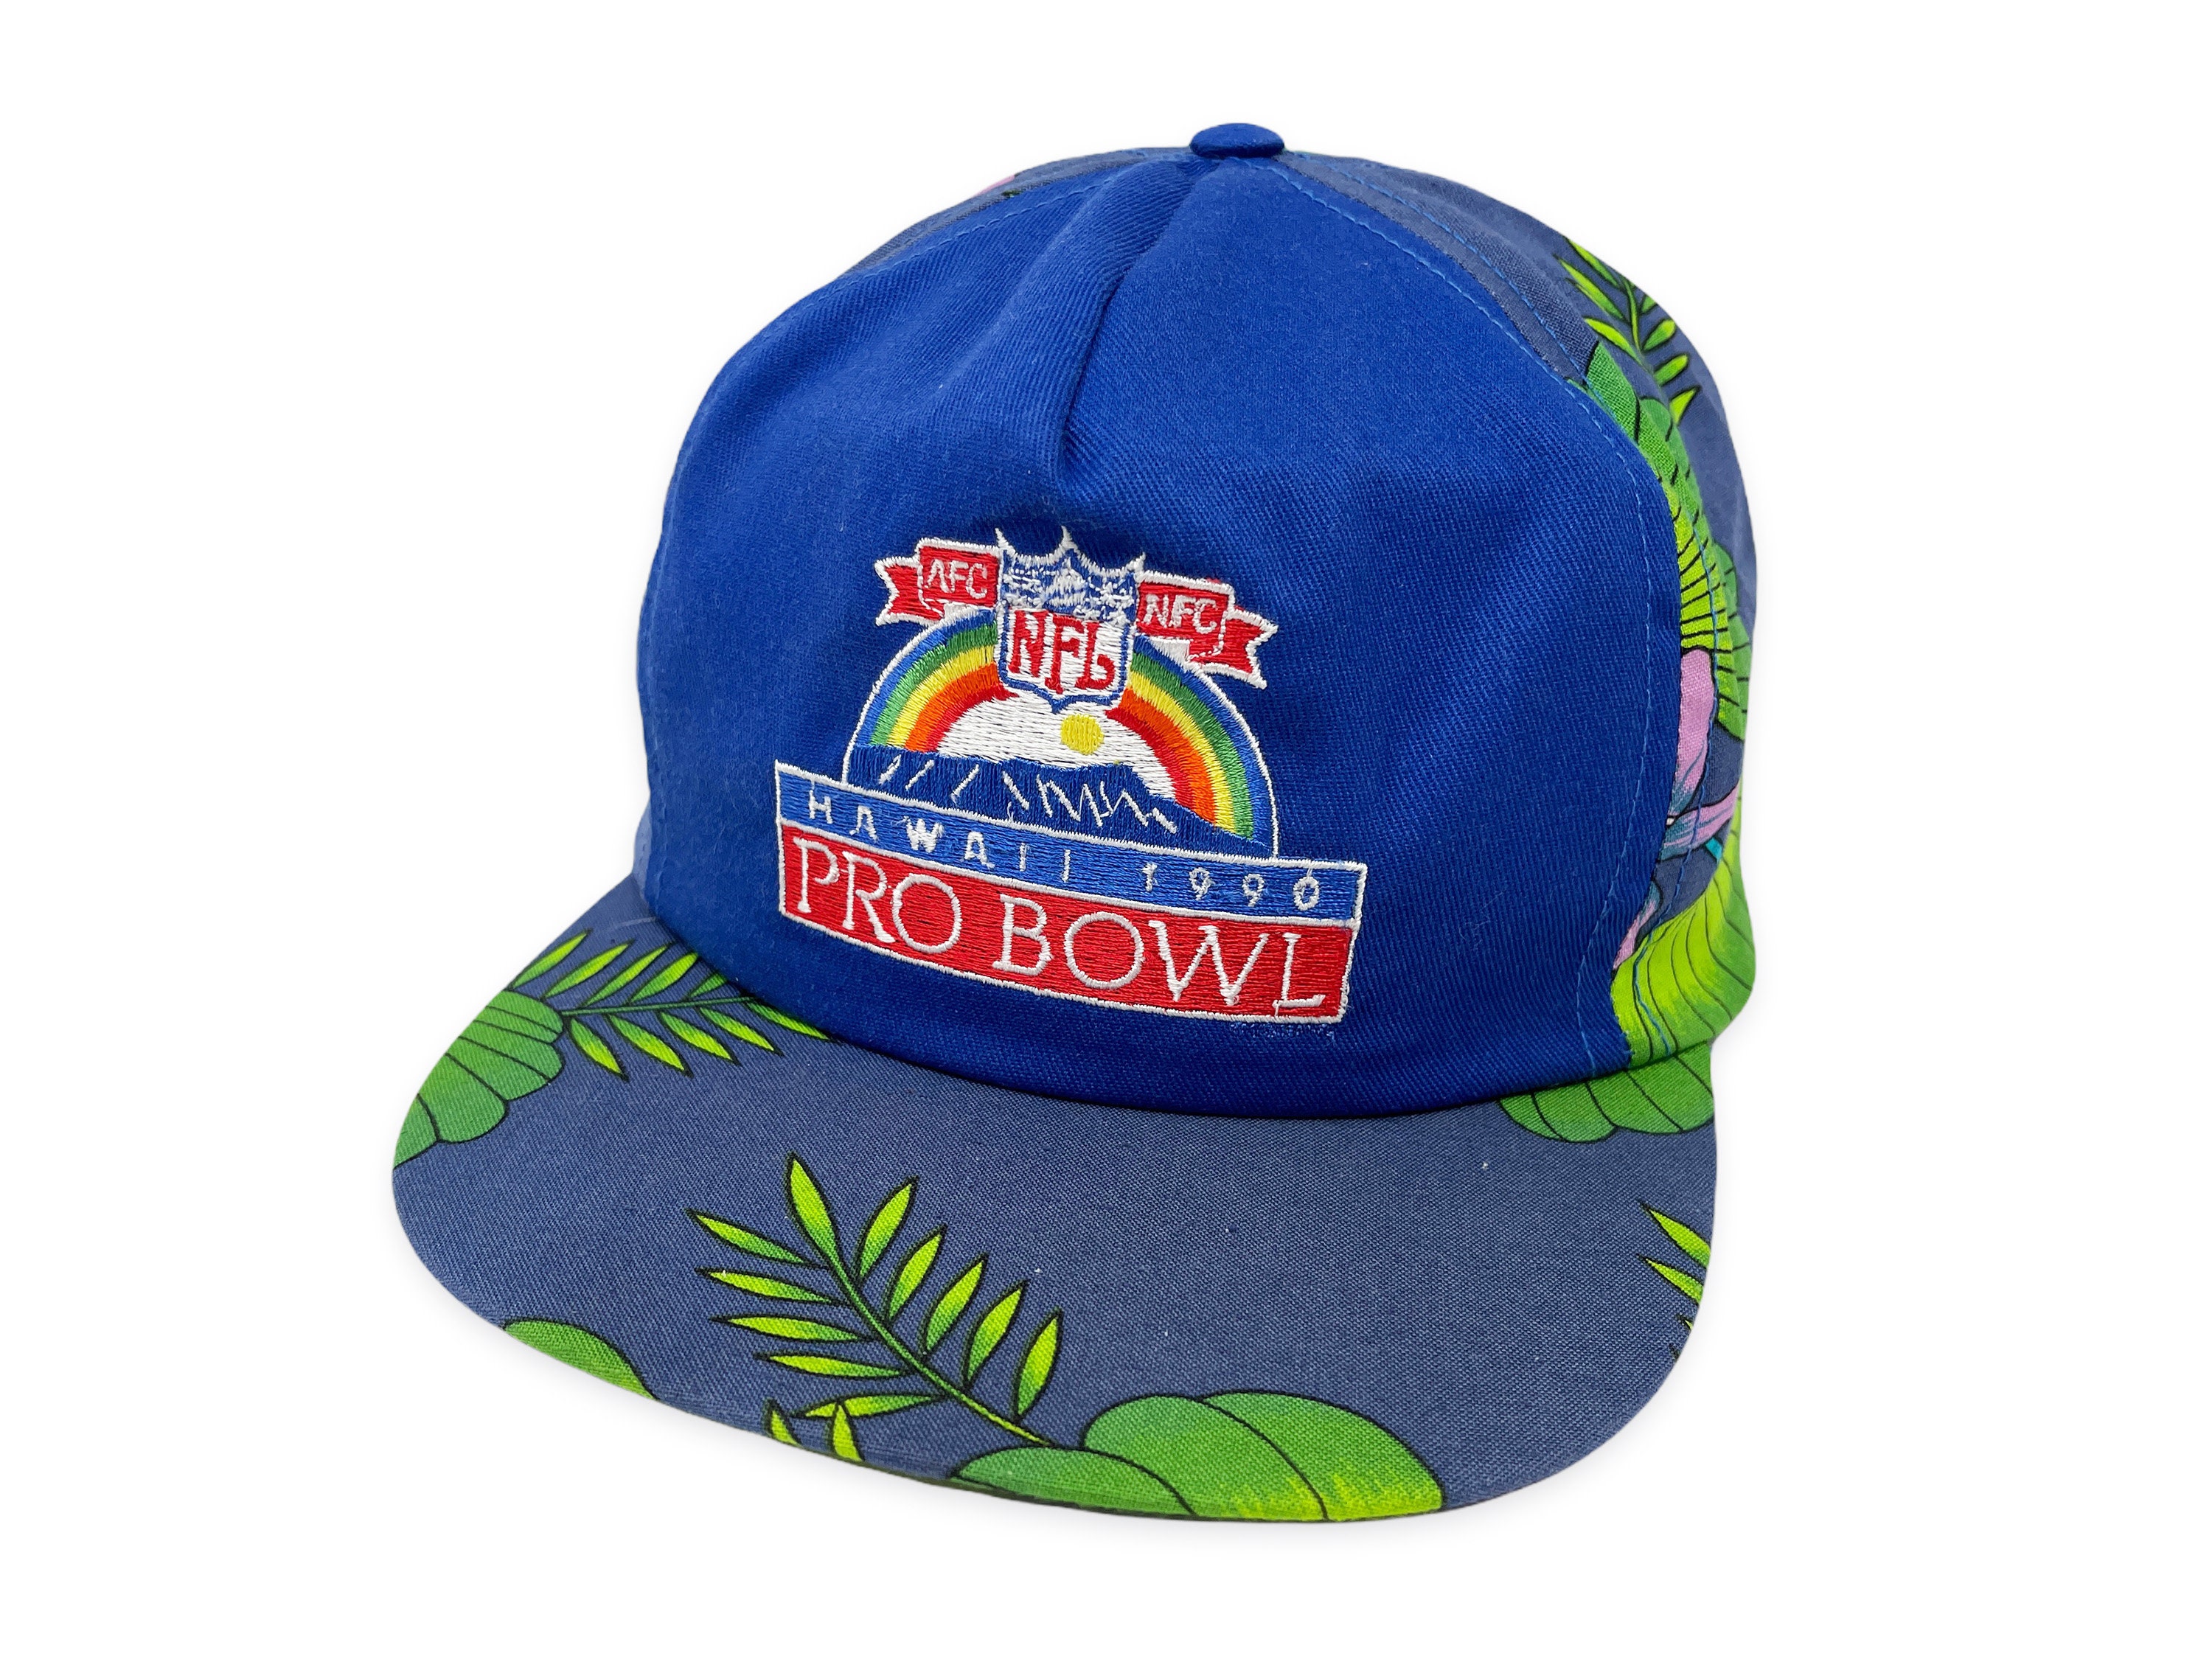 afc pro bowl hat